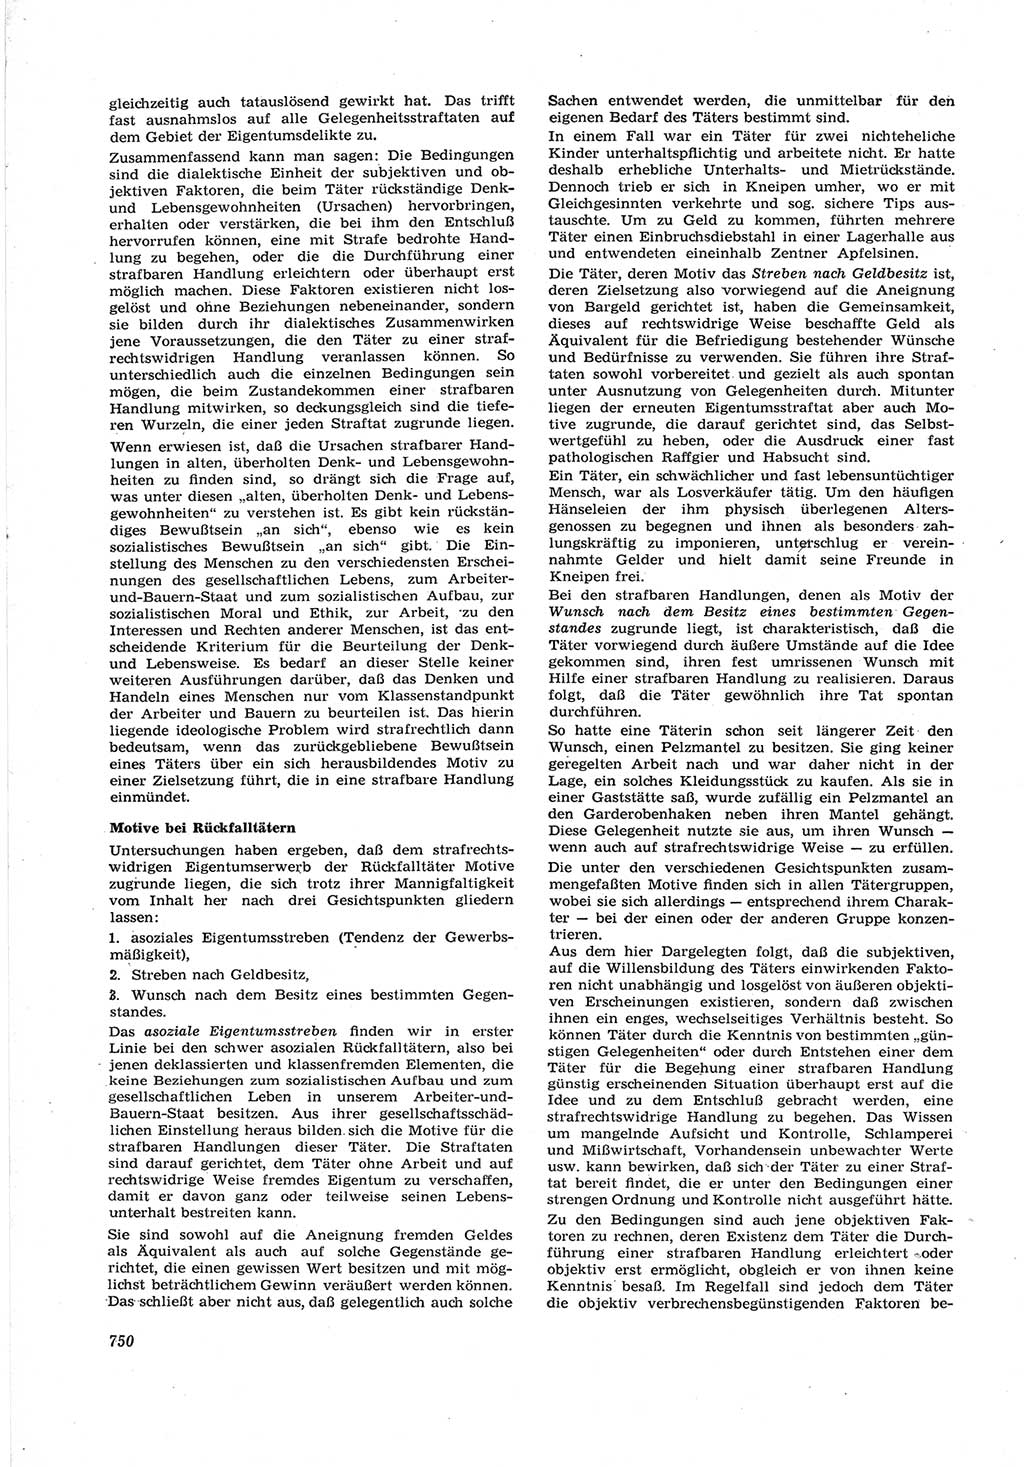 Neue Justiz (NJ), Zeitschrift für Recht und Rechtswissenschaft [Deutsche Demokratische Republik (DDR)], 17. Jahrgang 1963, Seite 750 (NJ DDR 1963, S. 750)